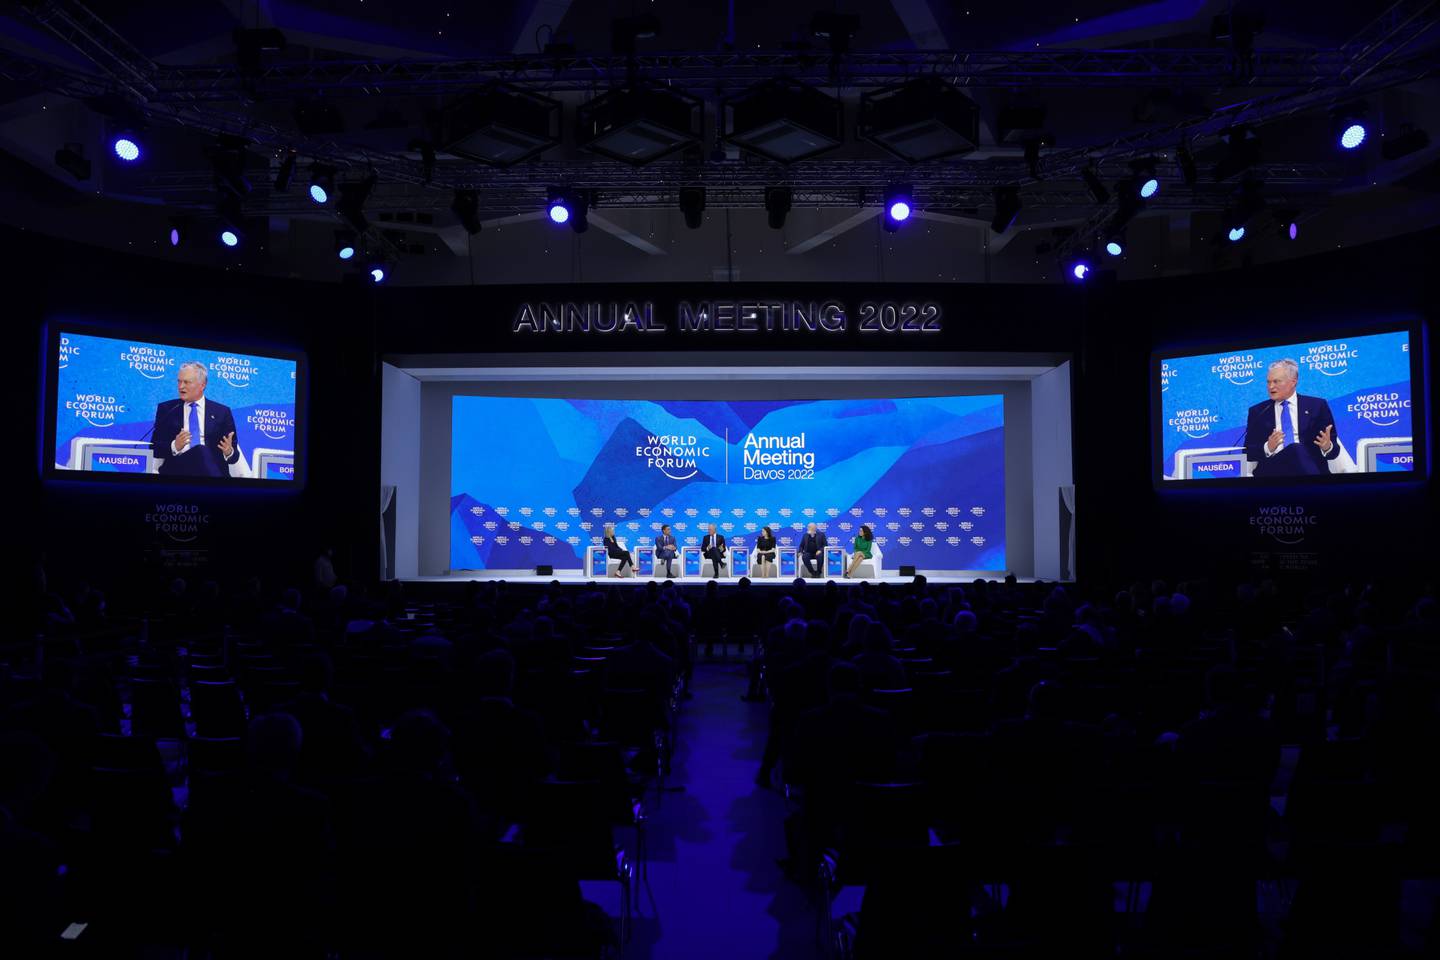 La reunión anual de Davos entre líderes políticos, altos ejecutivos y celebridades se lleva a cabo del 22 al 26 de mayo.Fotógrafo: Hollie Adams/Bloombergdfd